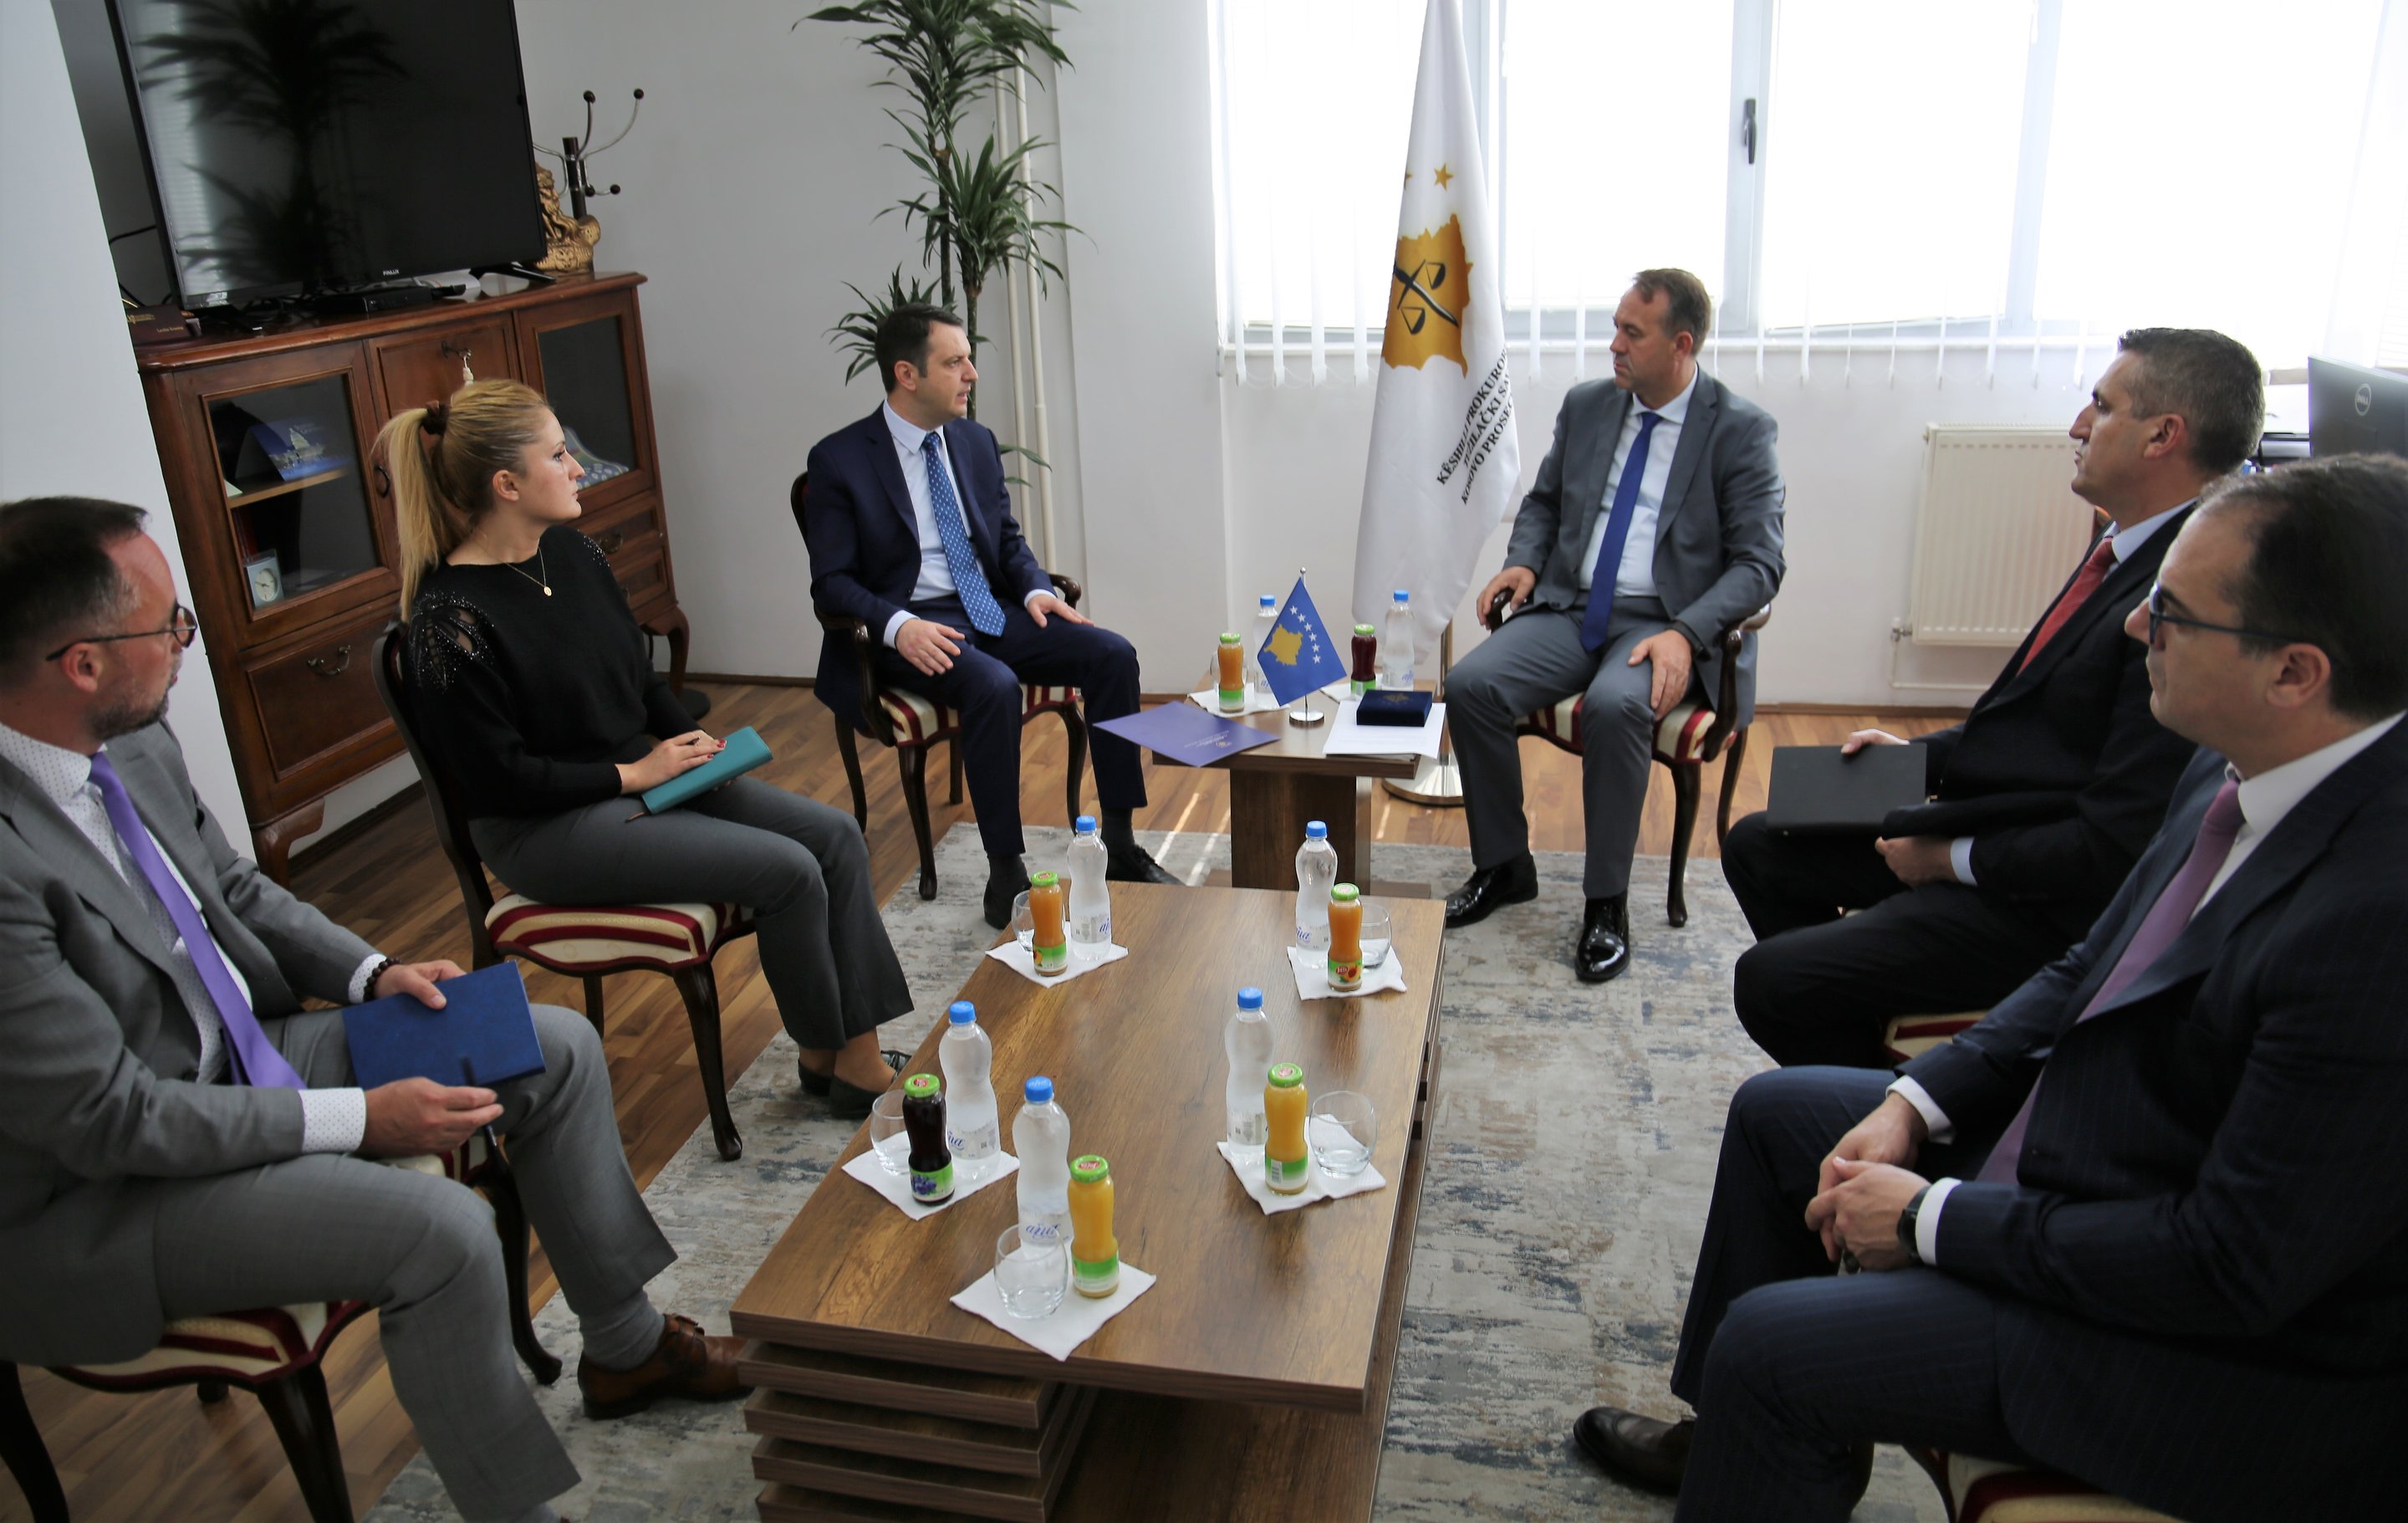 Predsedavajući Hyseni bio je domaćin sastanka ministru pravde, Selimi